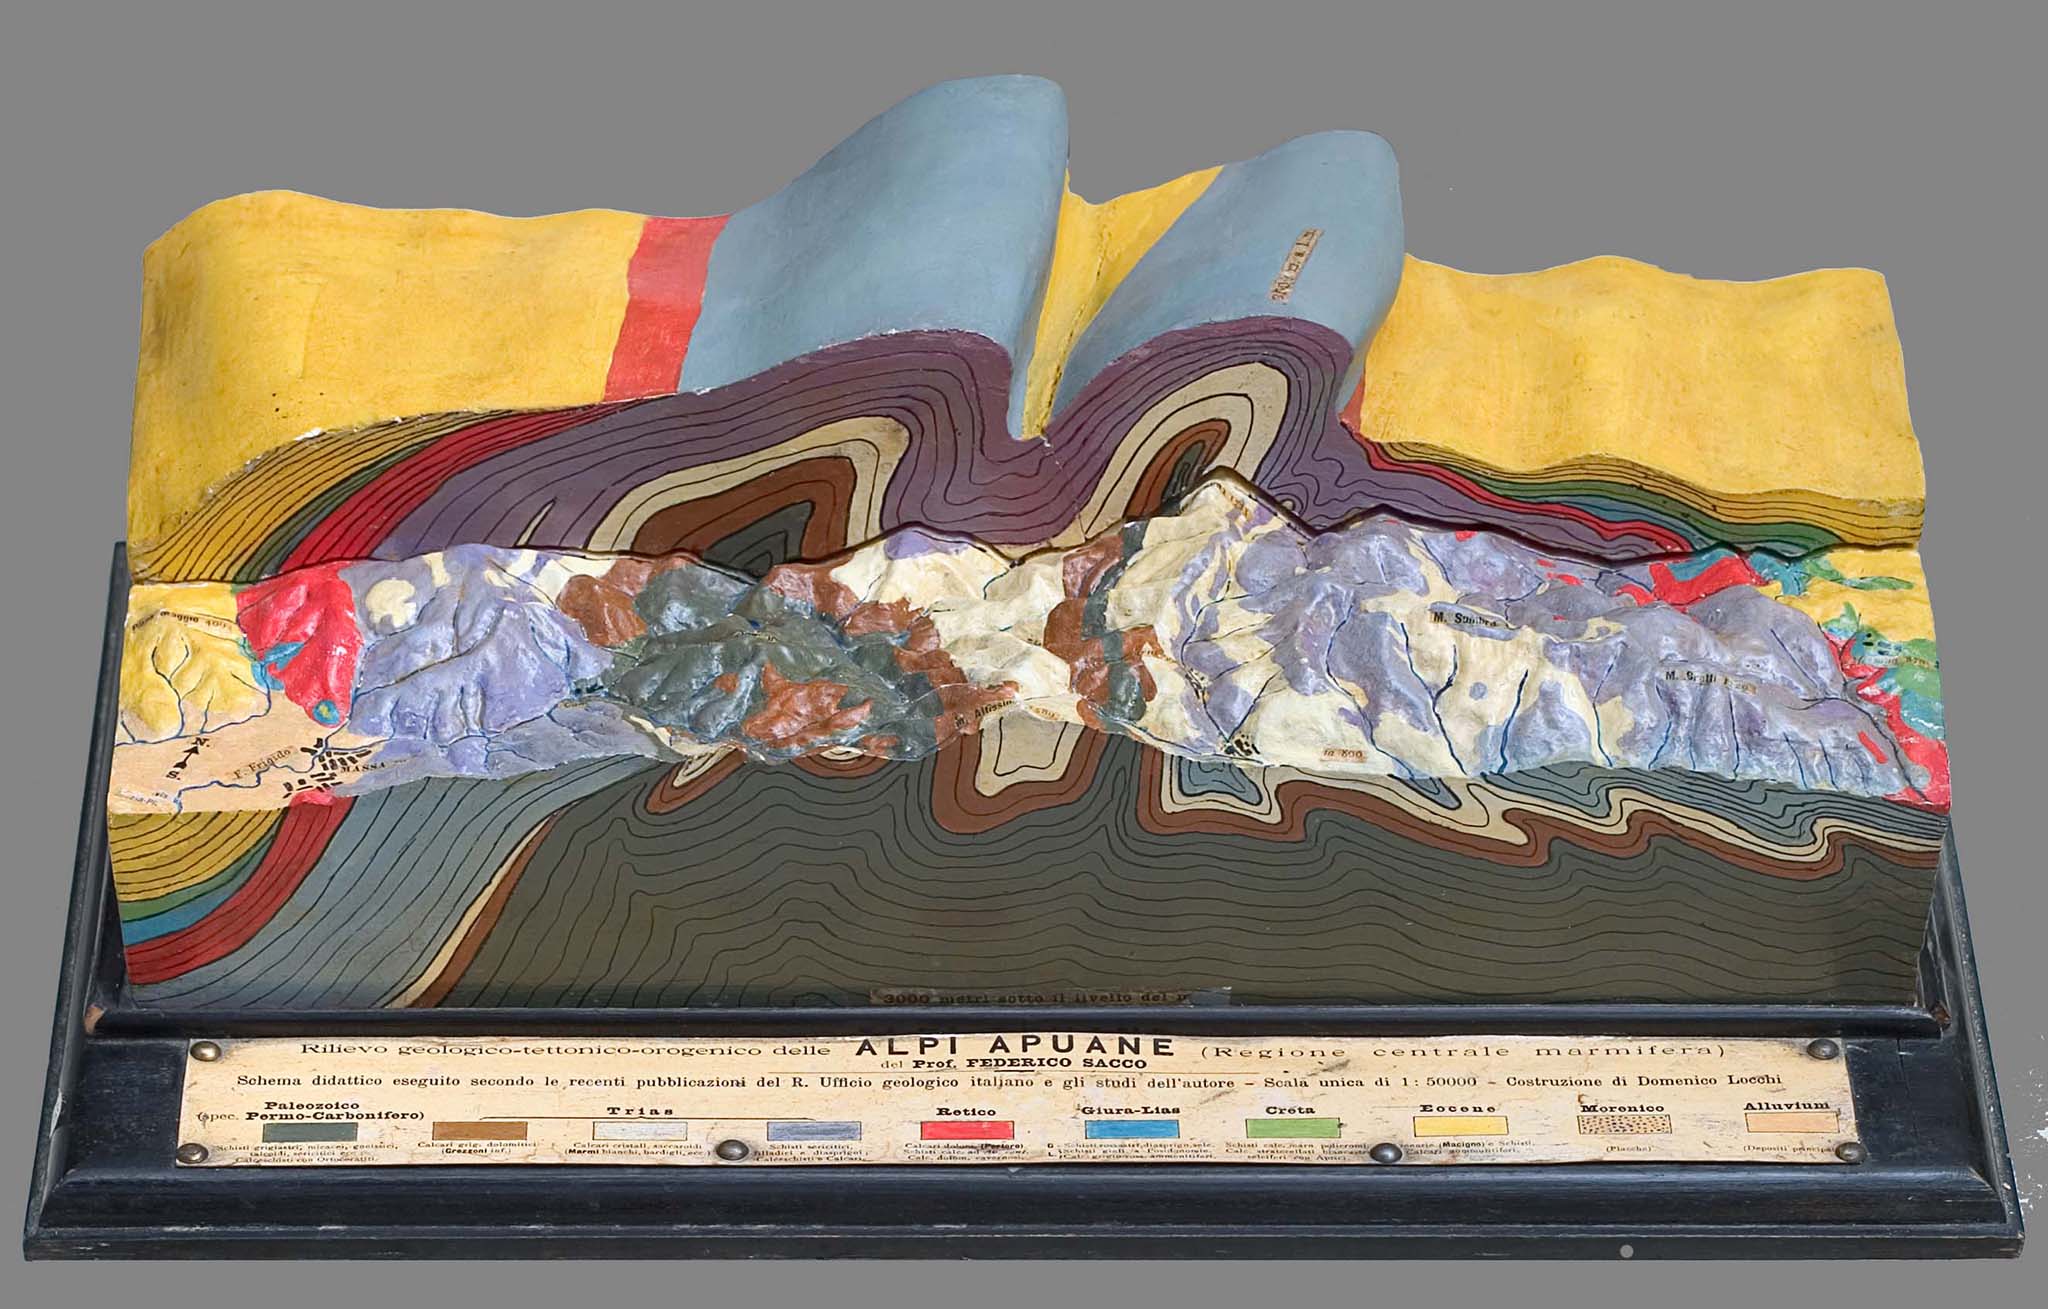 Vergrösserte Ansicht: Relief der Apuanen Alpen, Massstab 1:50000